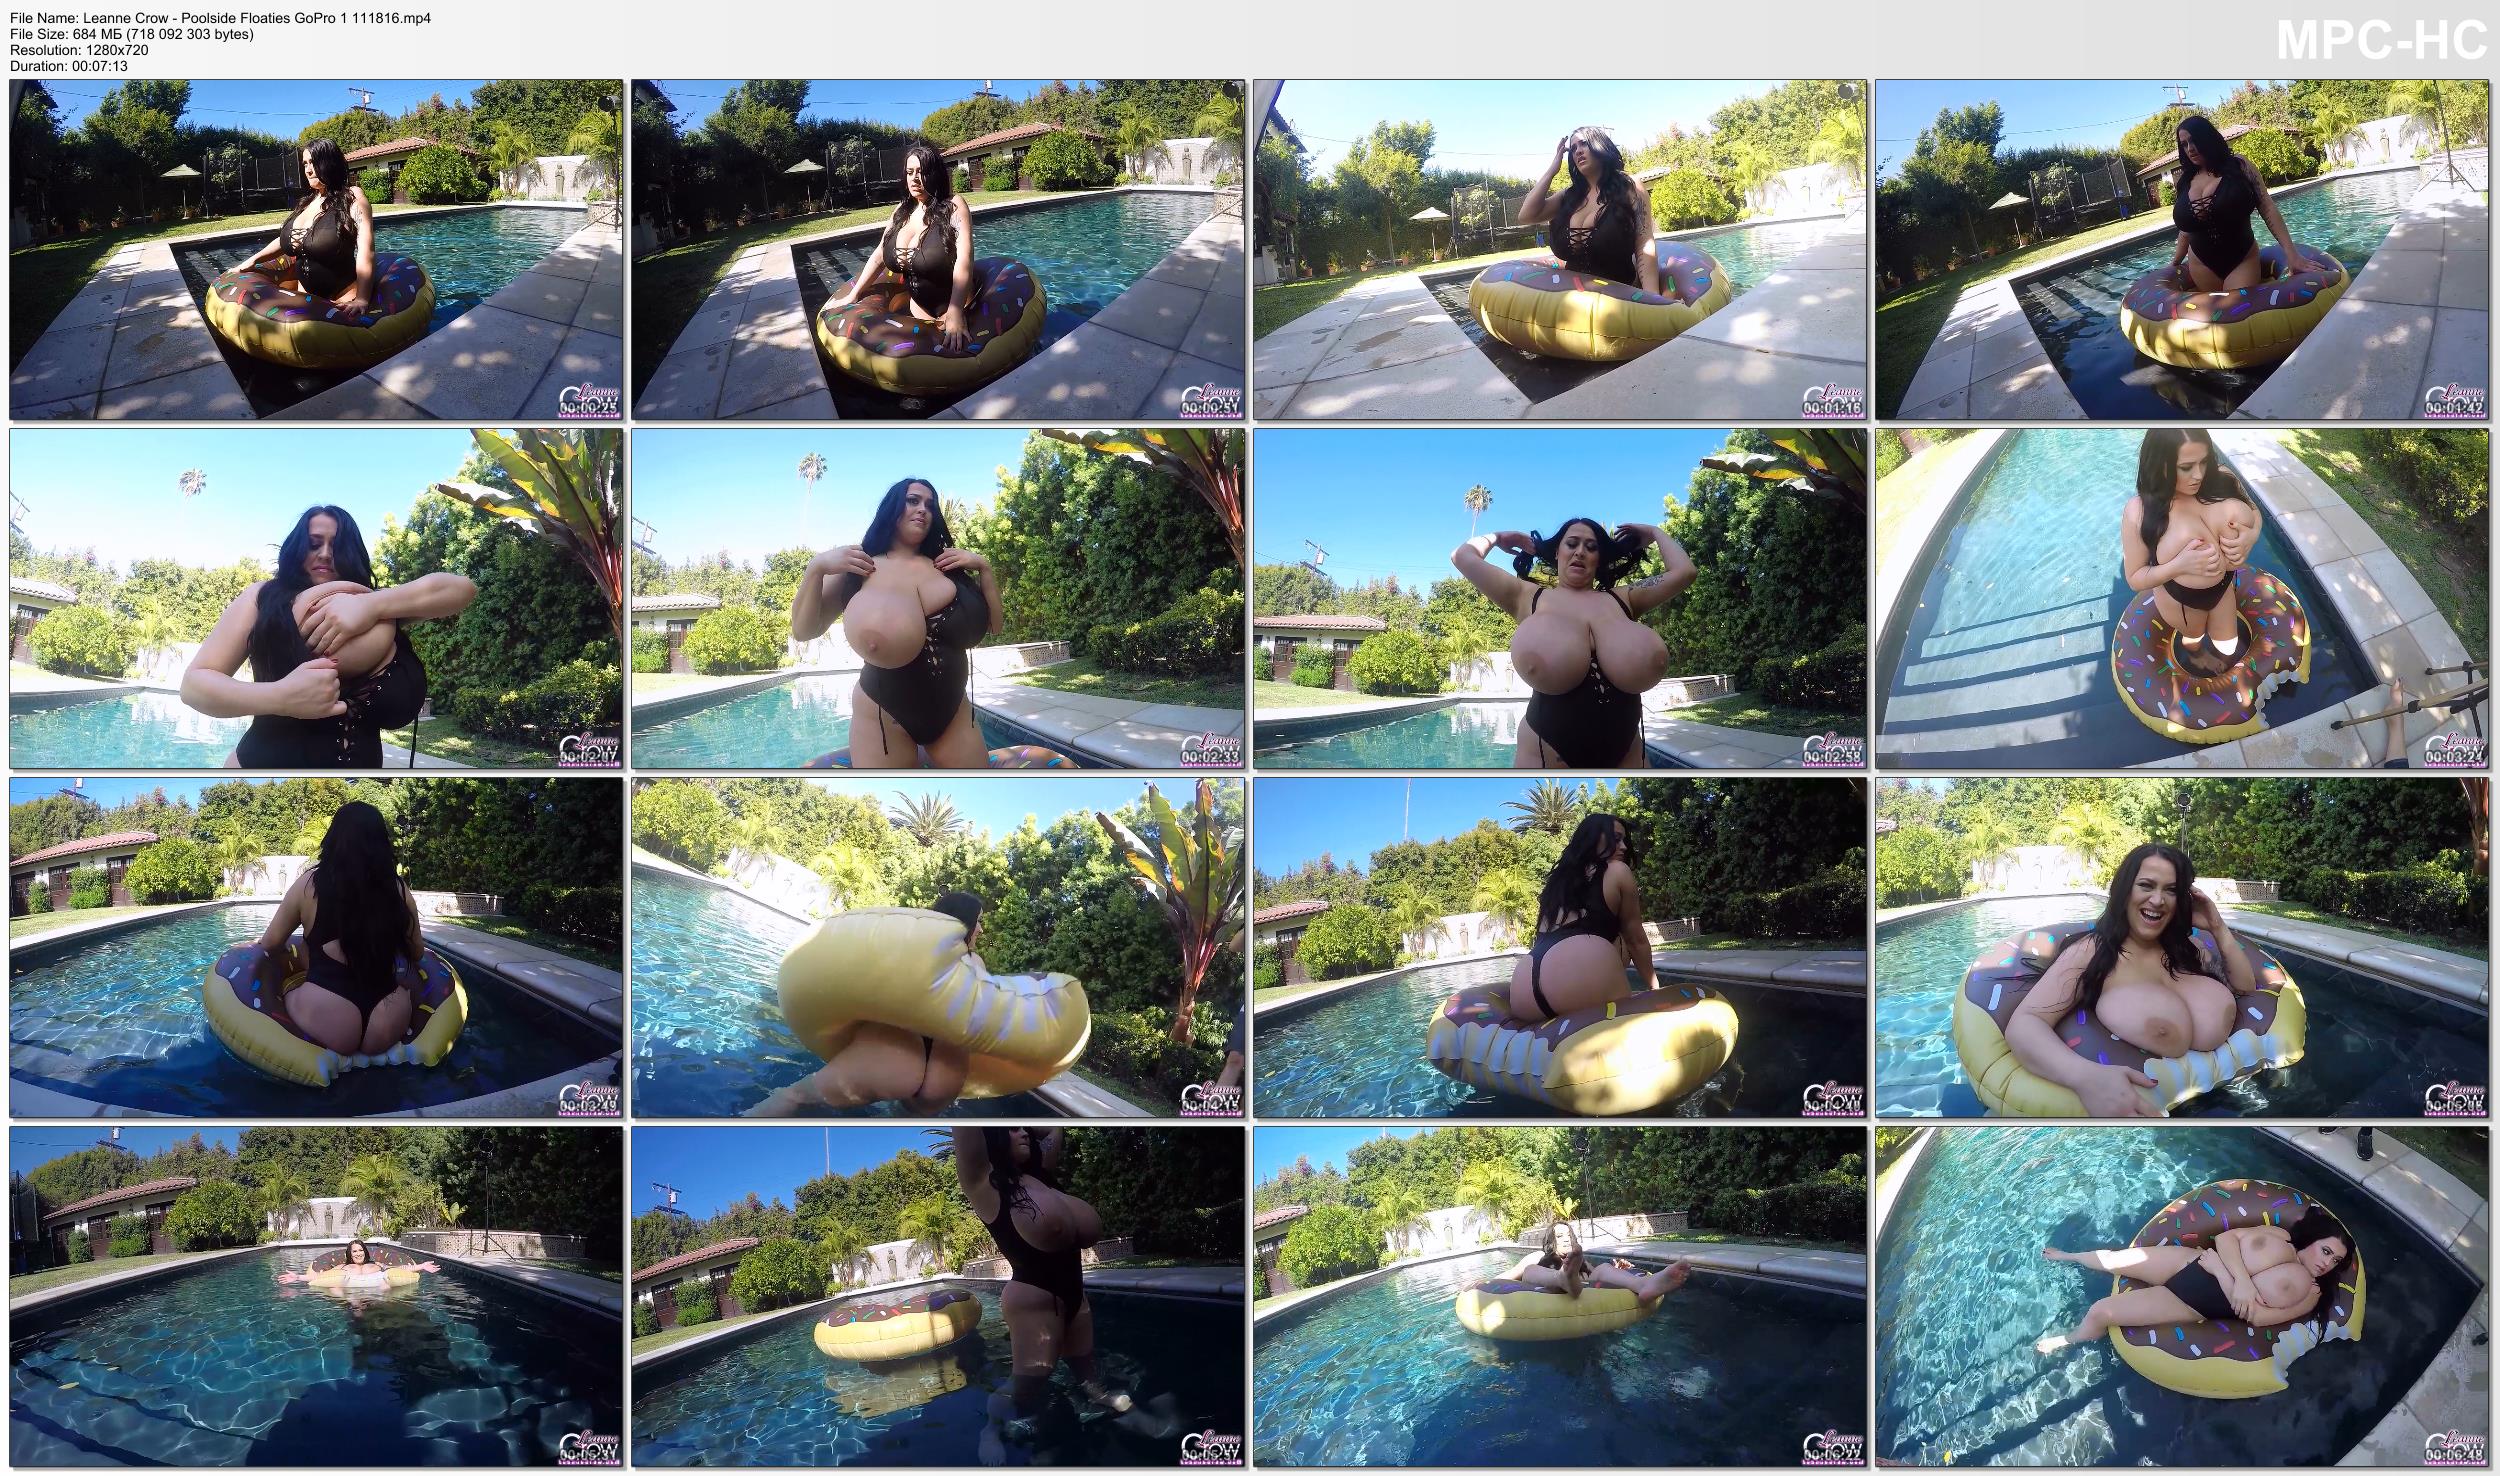 Leanne Crow - Poolside Floaties GoPro 1 111816.jpg